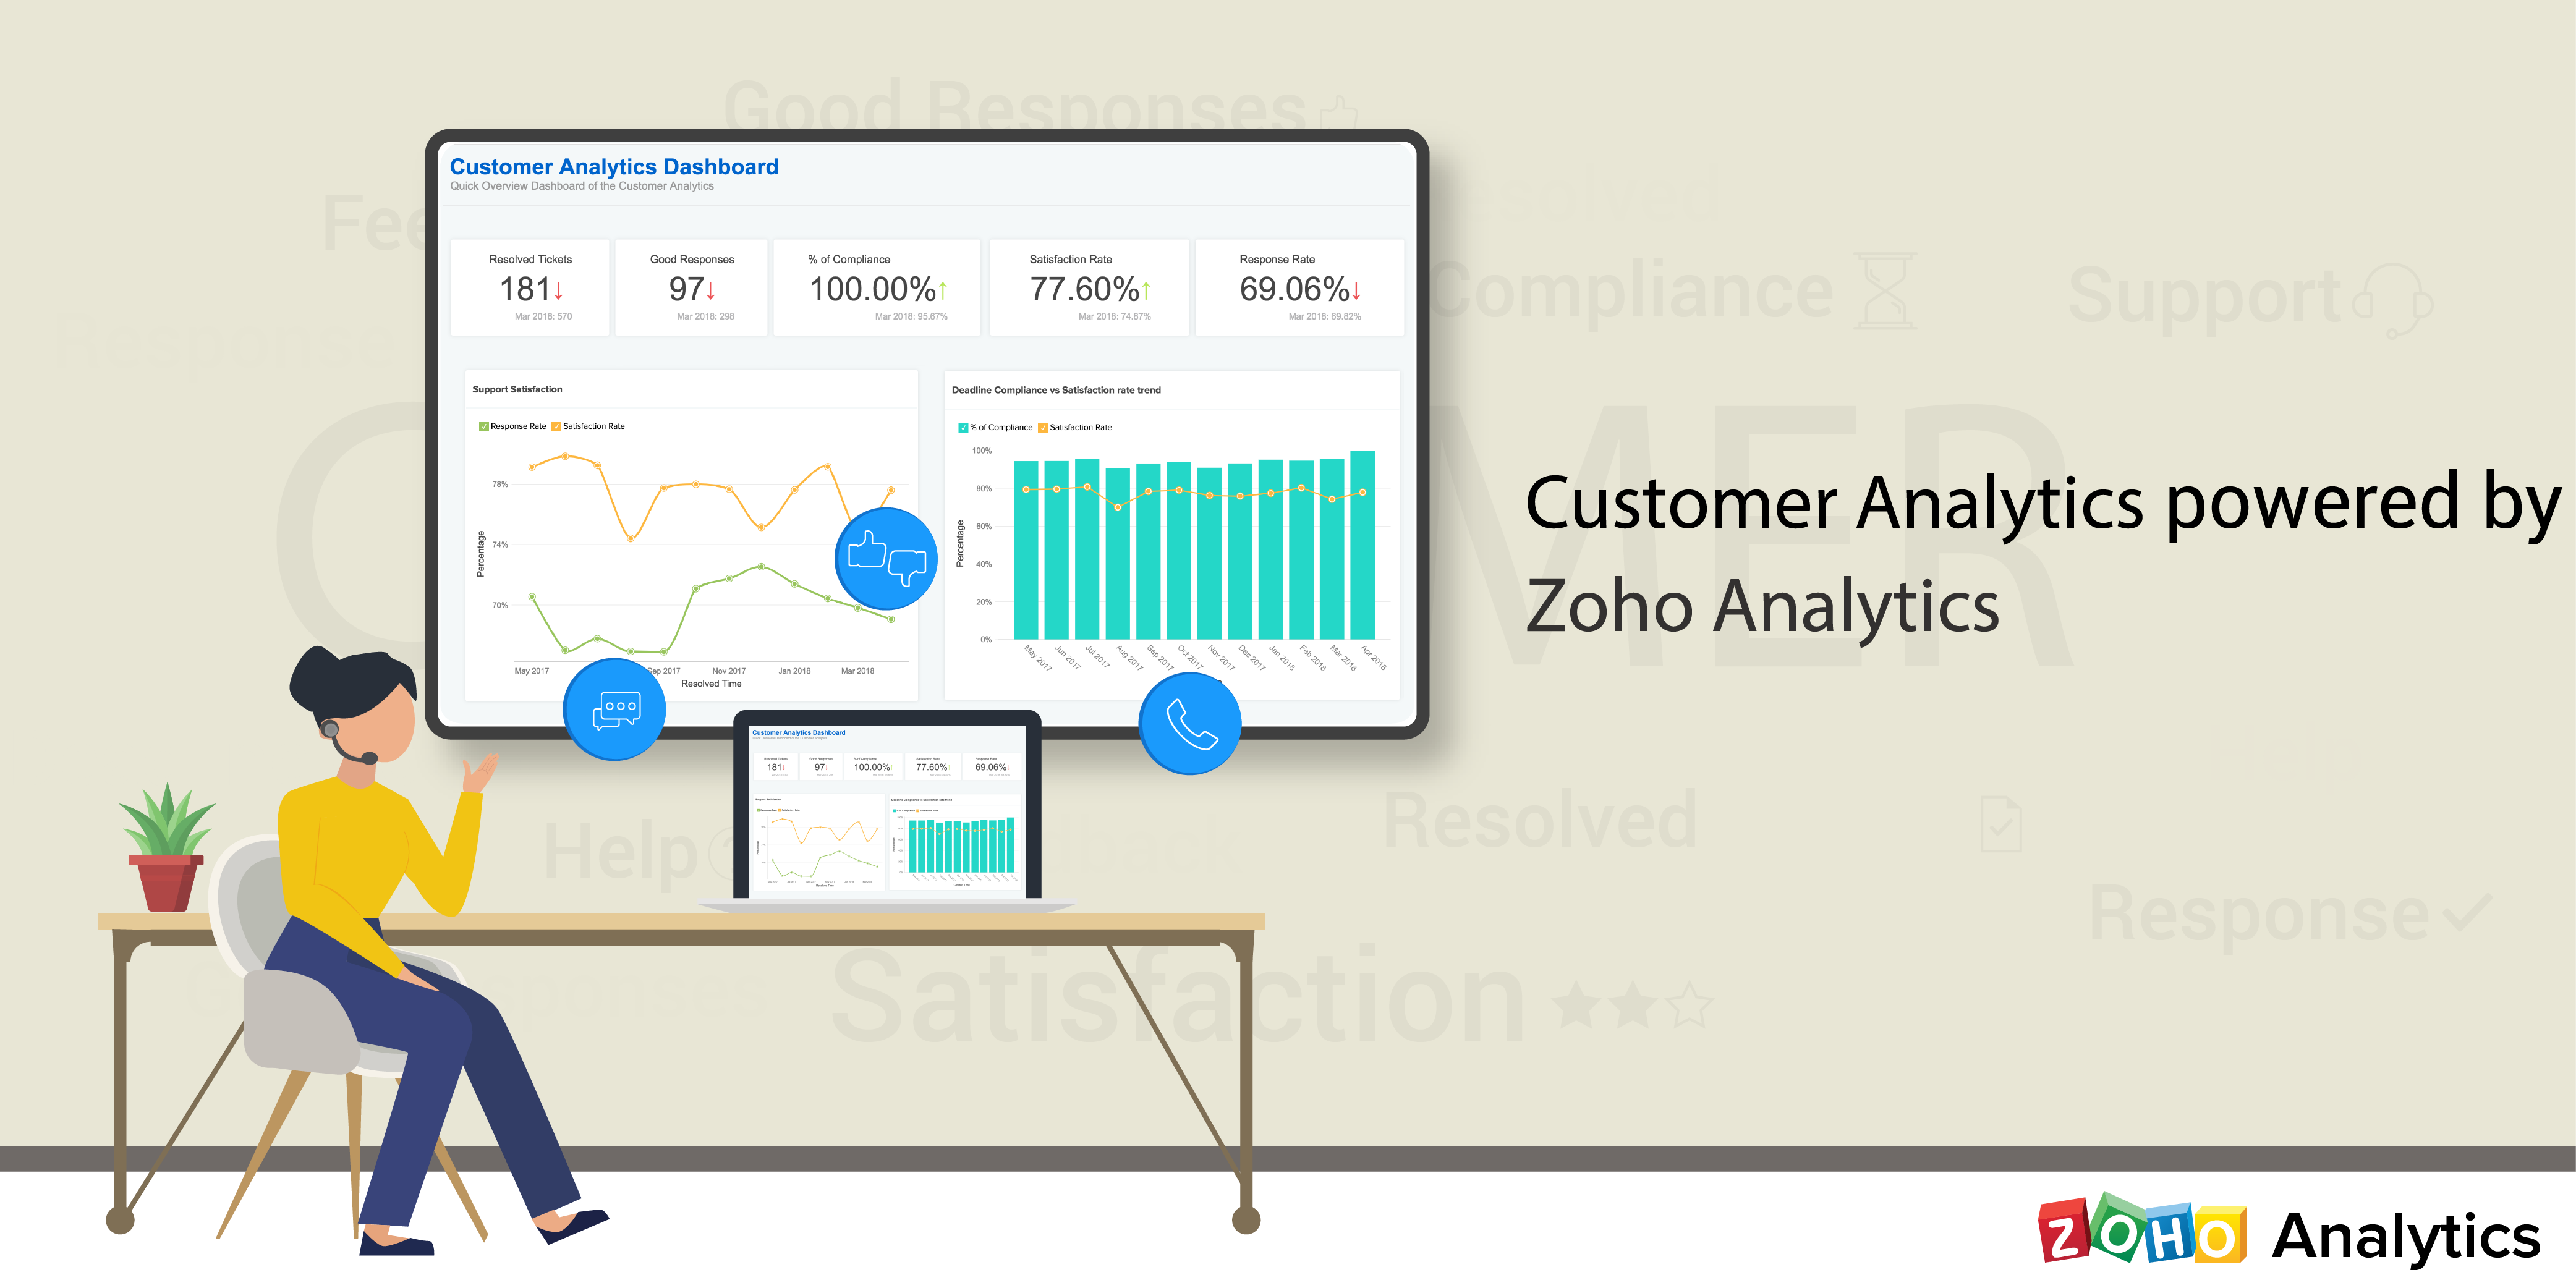 Customer Analytics powered by Zoho Analytics